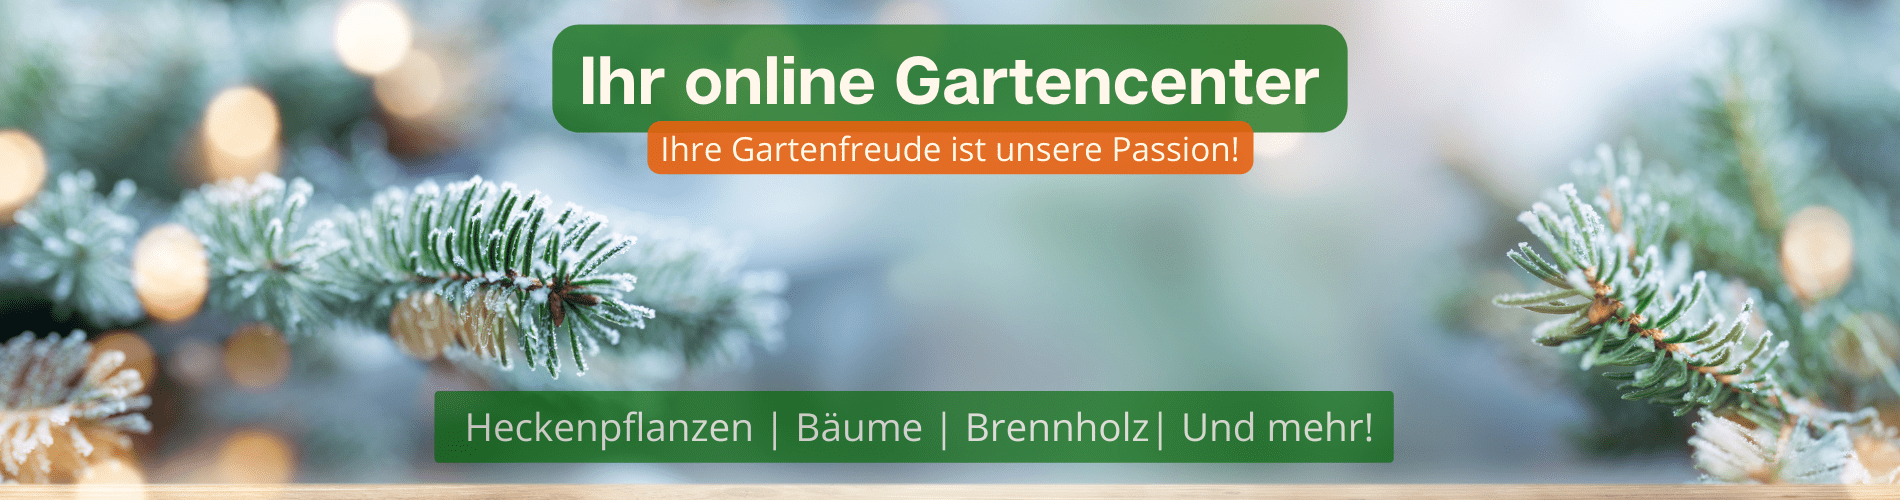 Gardline - Ihr online Gartencenter